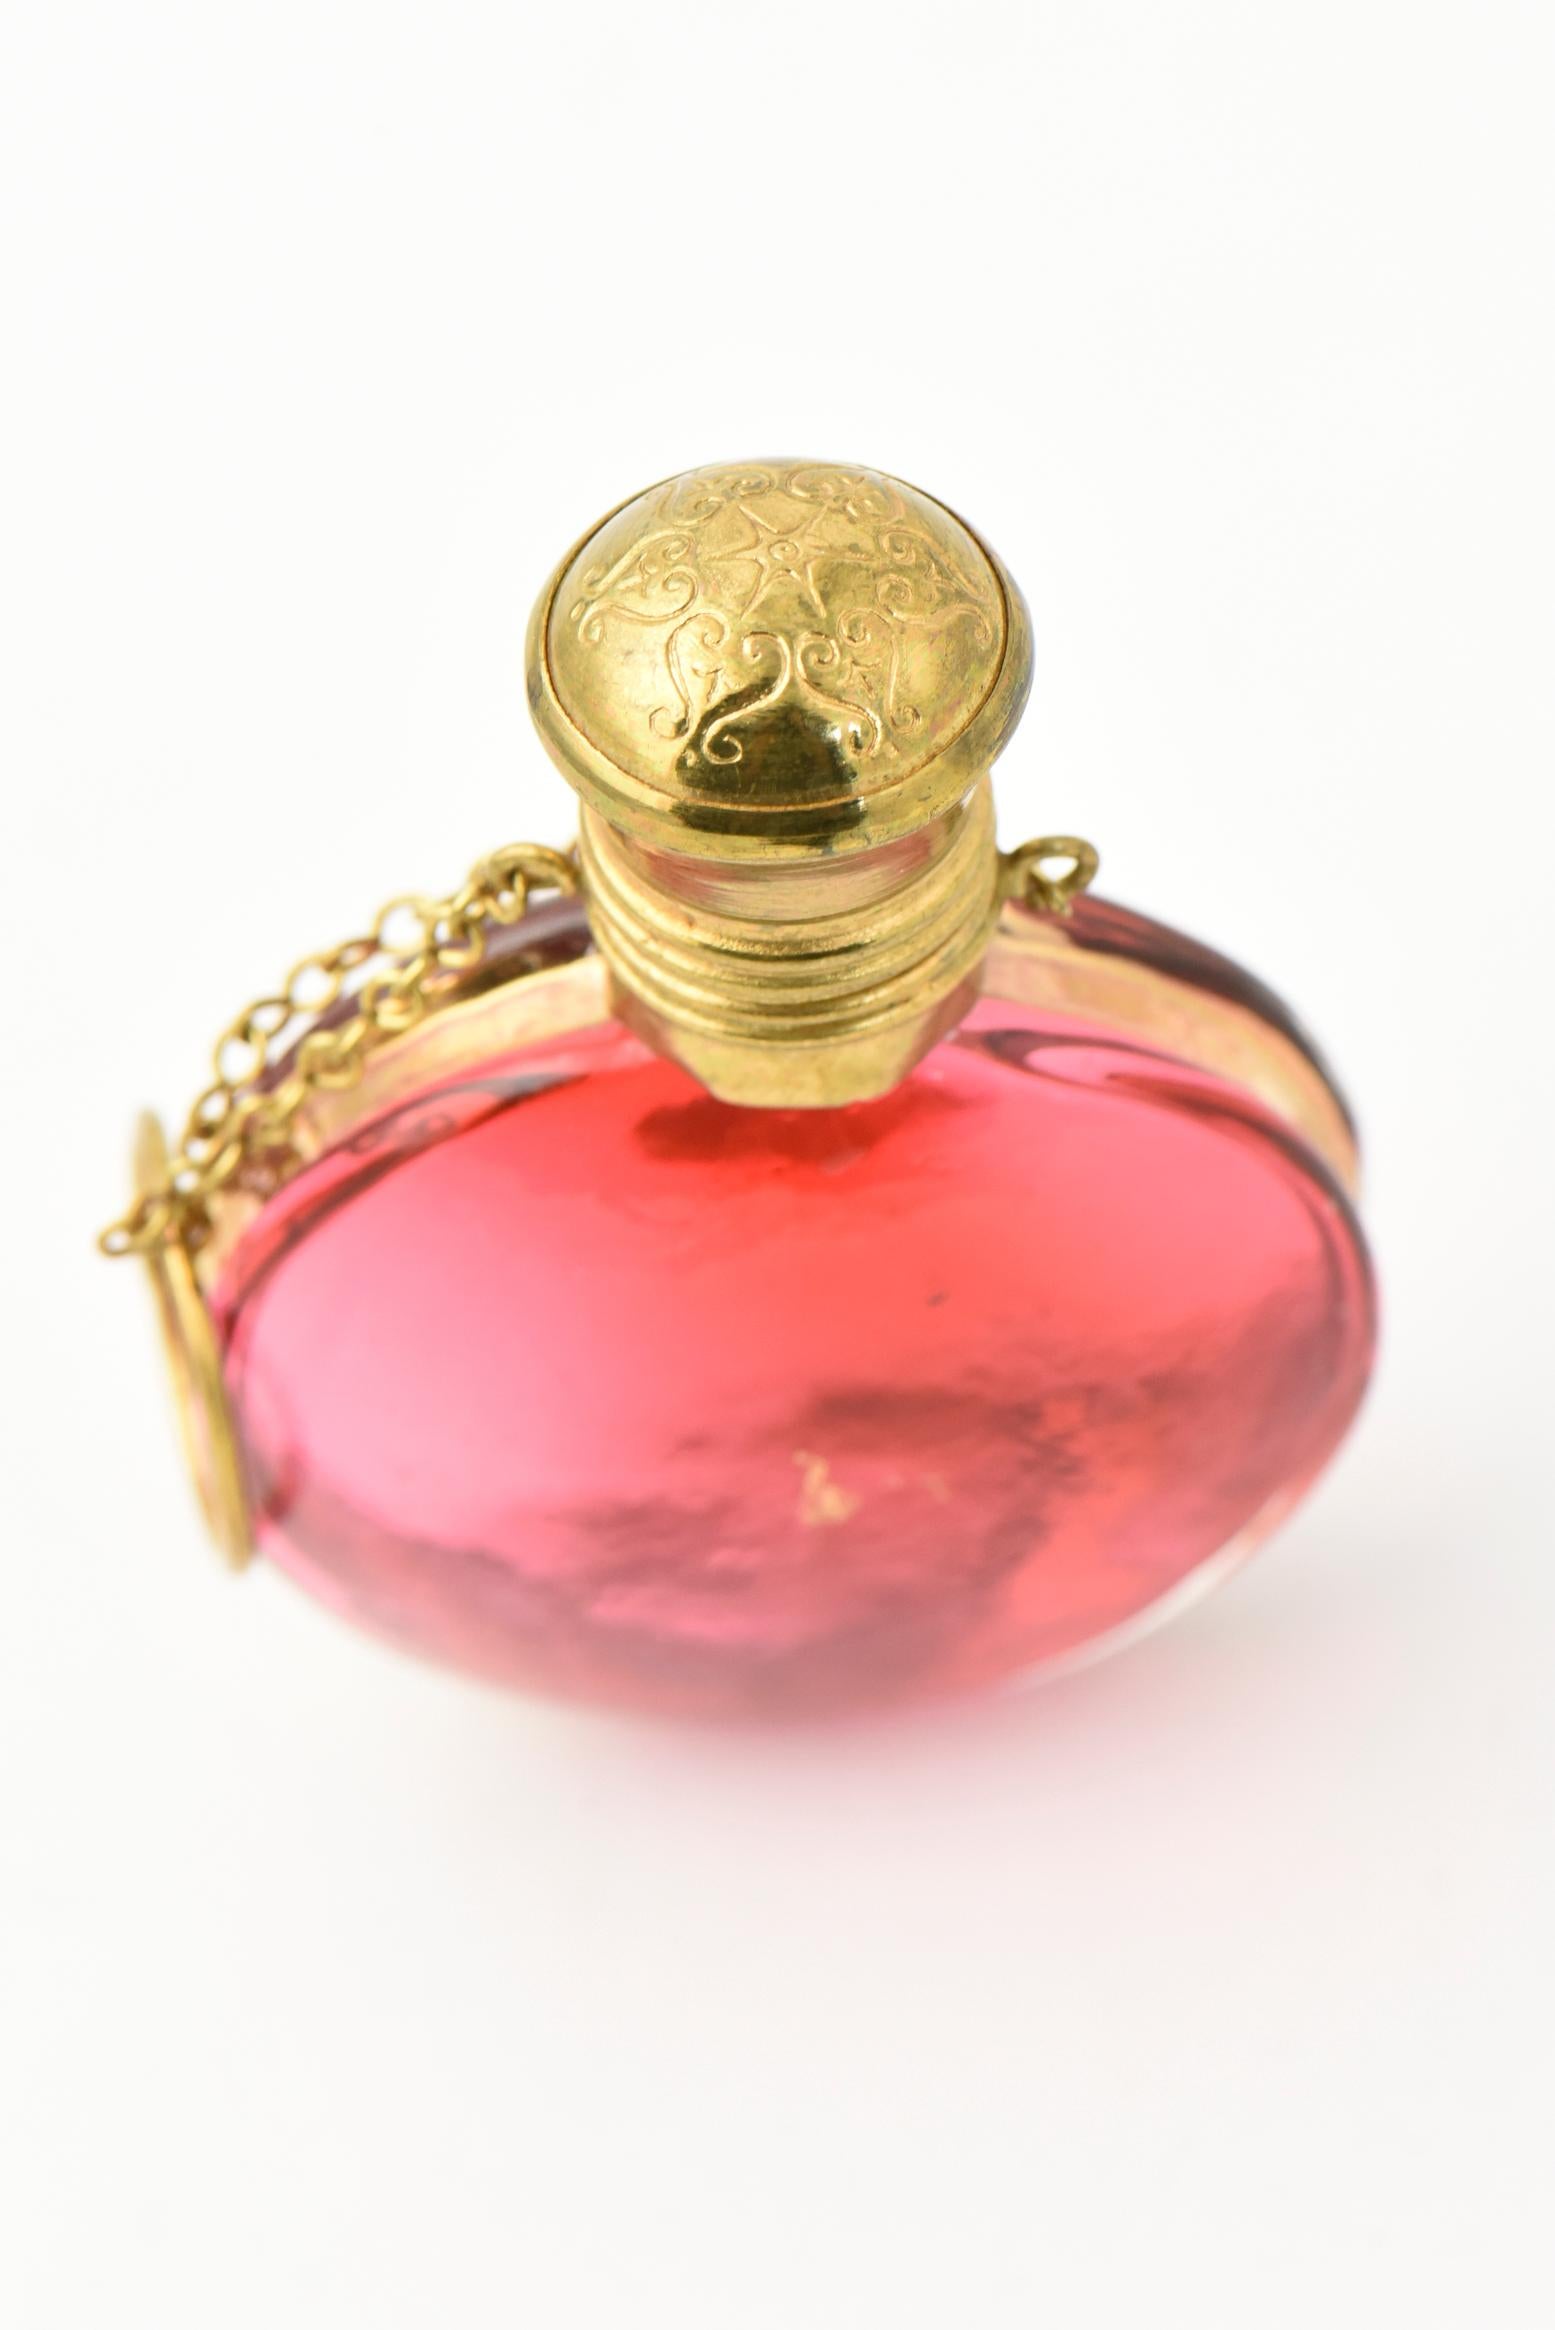 chatelaine perfume bottle